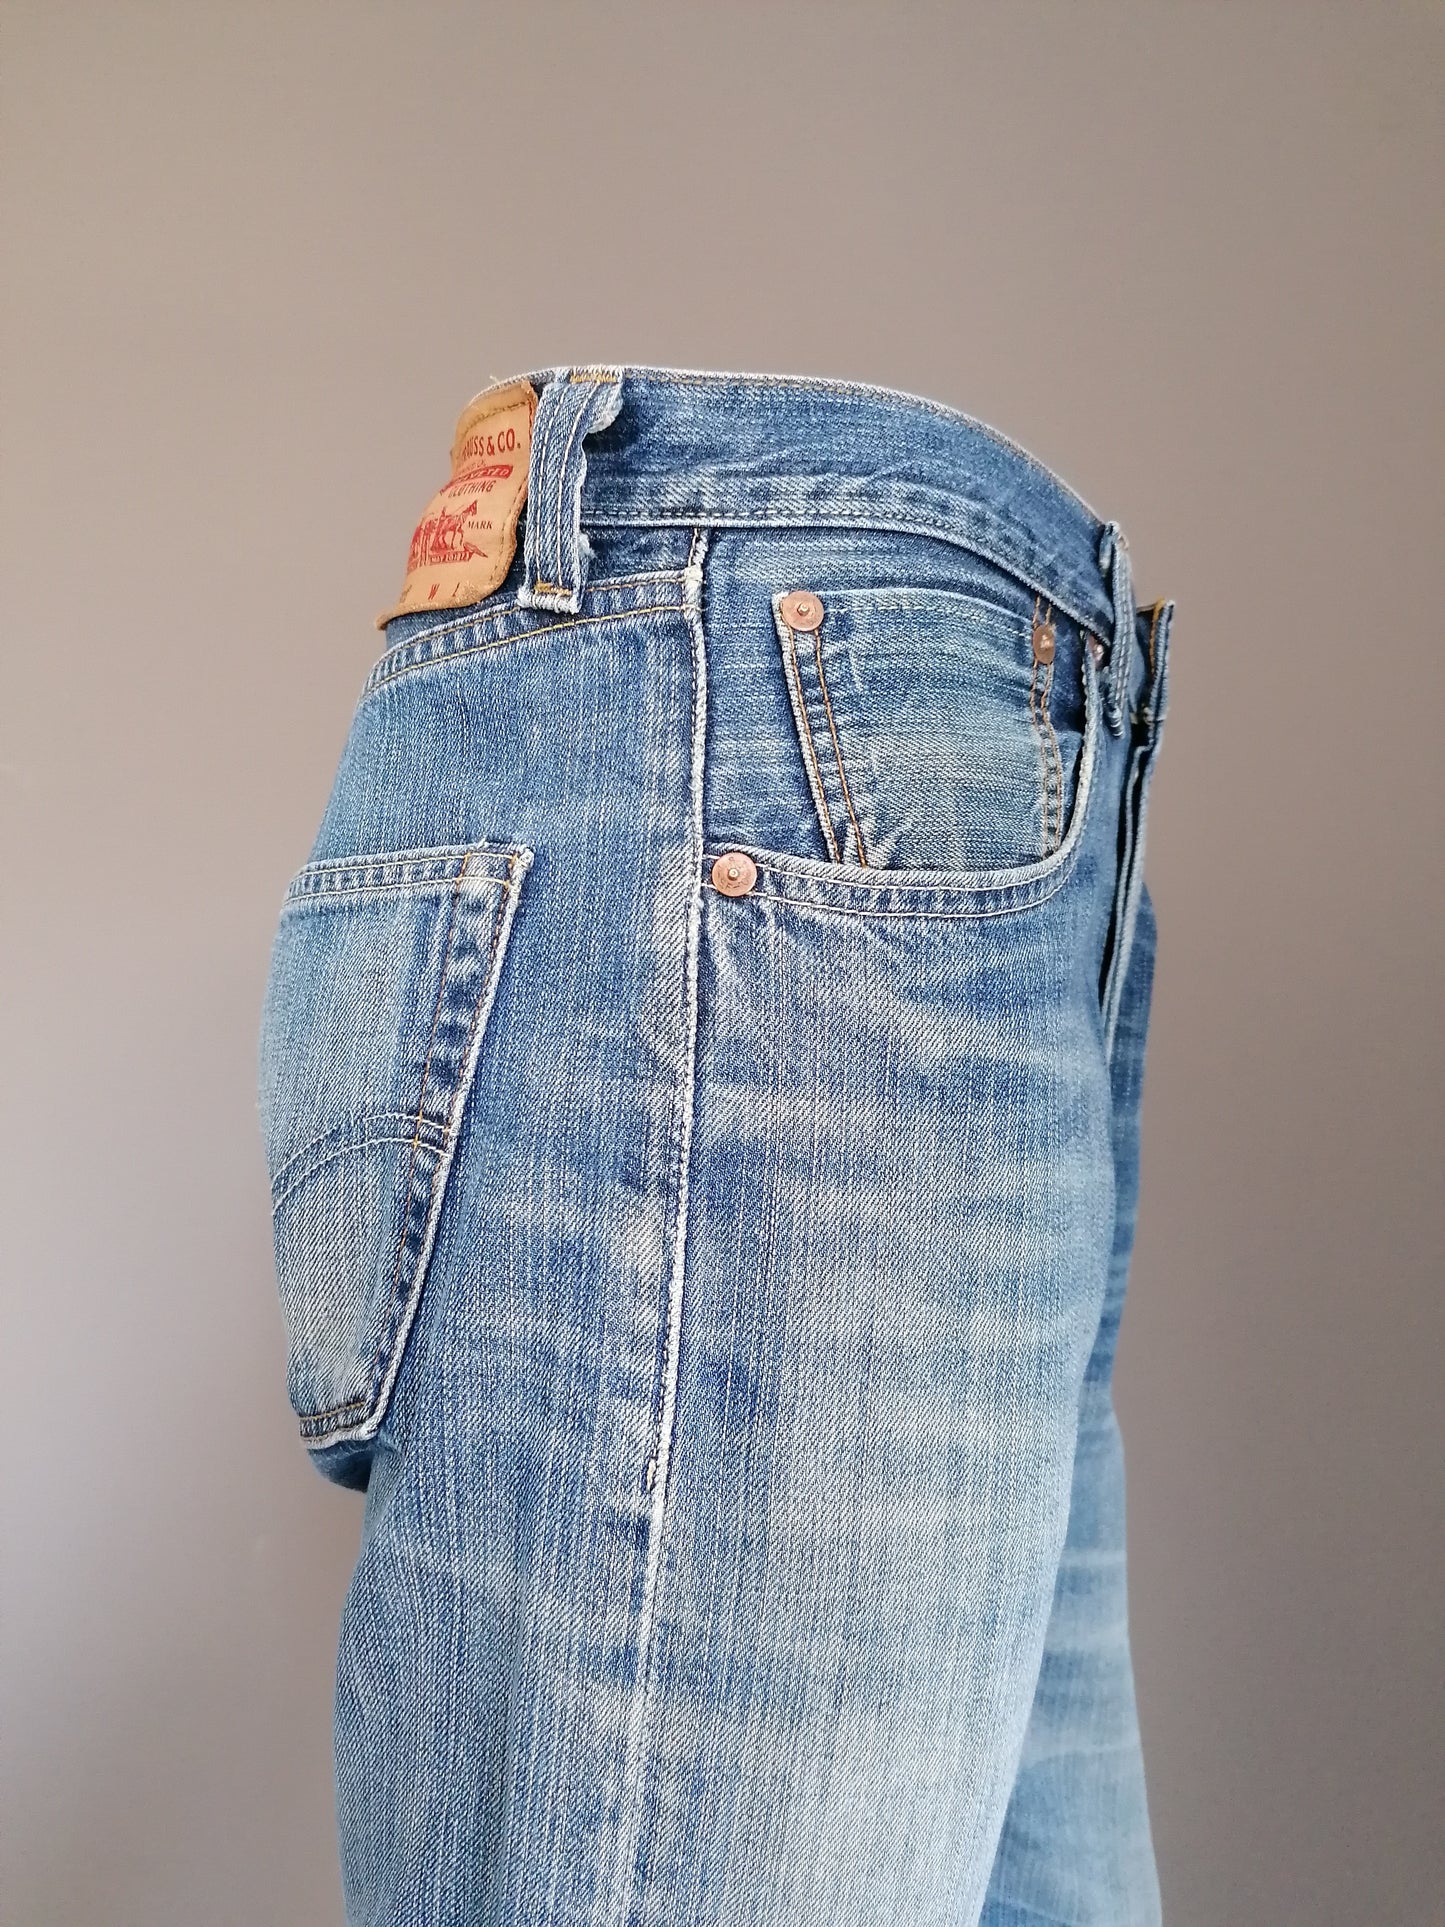 Levi's 501 jeans. 1947 limited. Blauw gekleurd. W32 - L30.